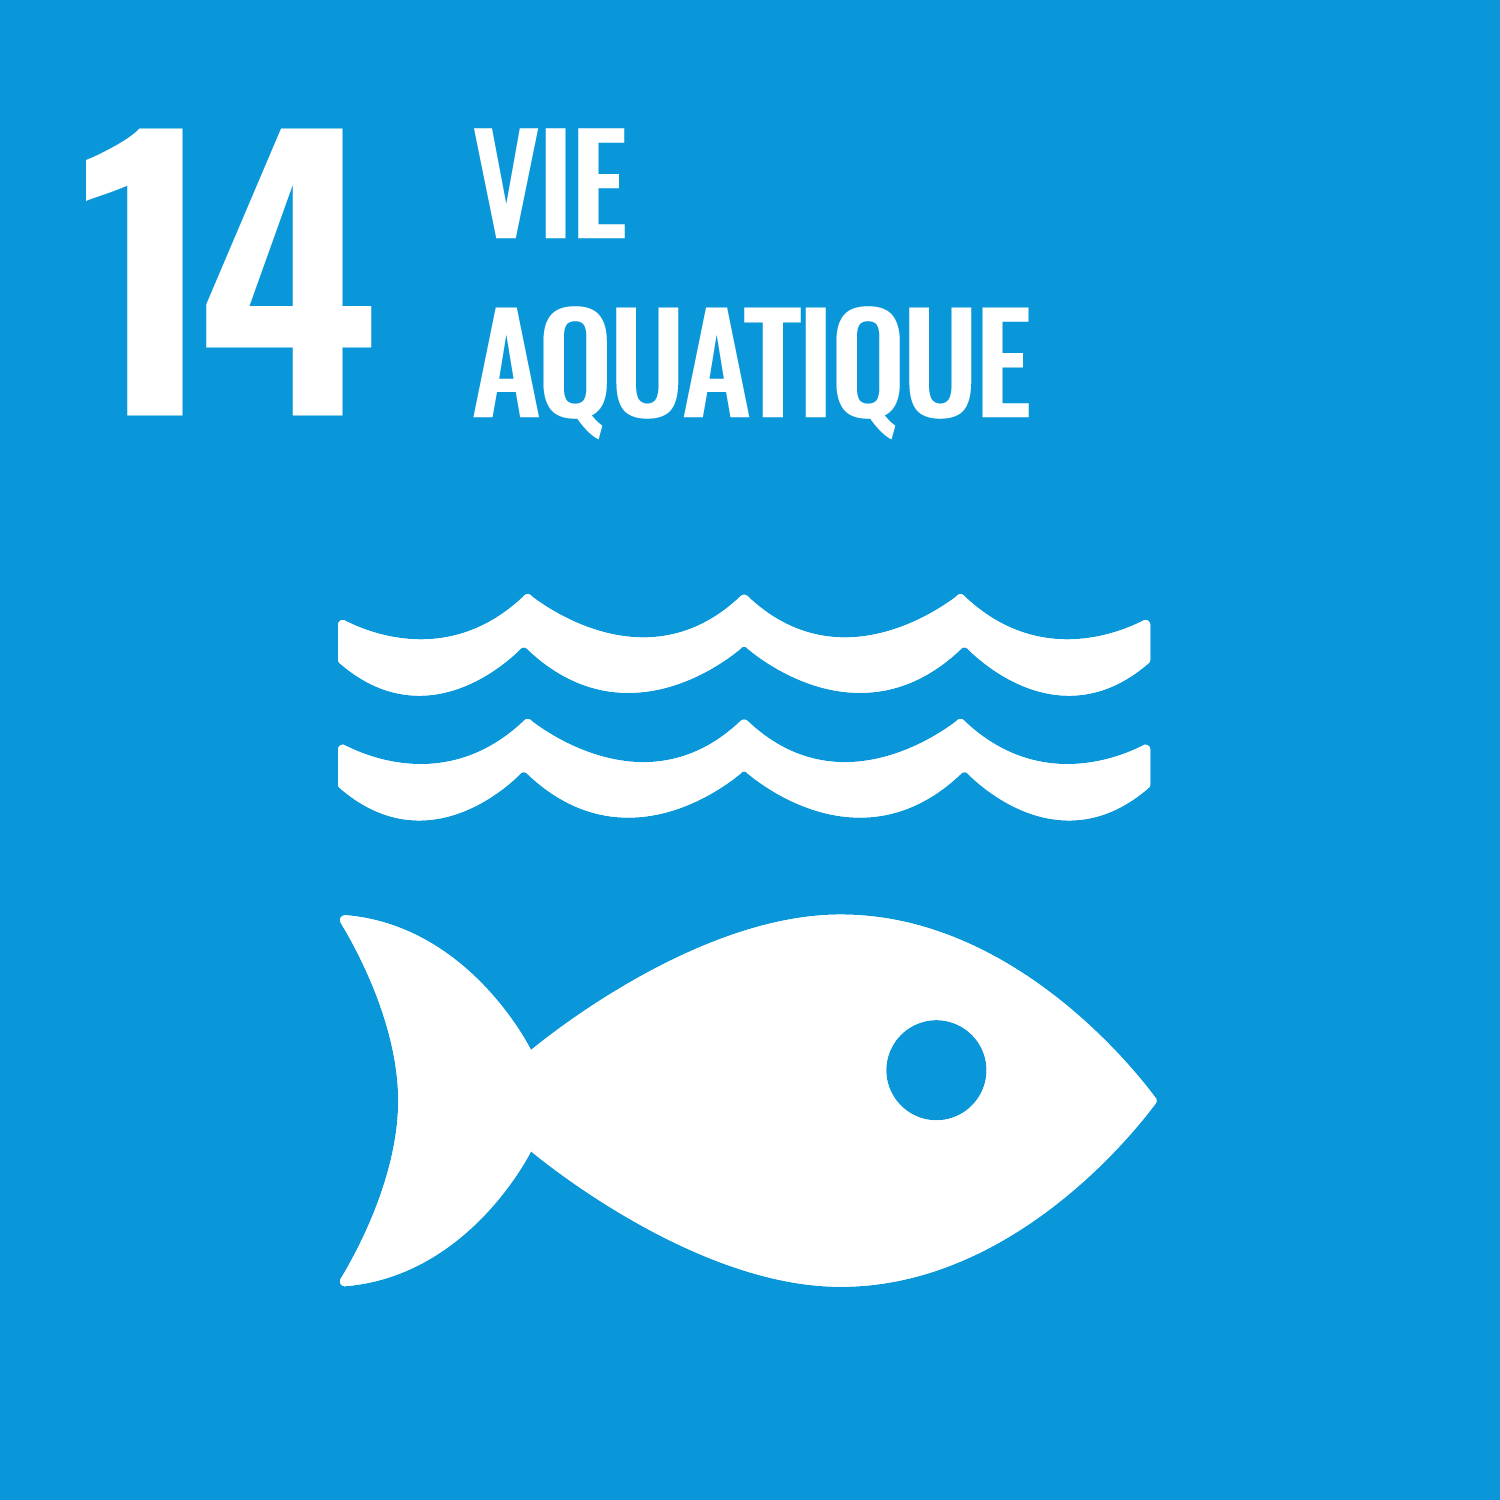 Objectif 14 - Conserver et exploiter de manière durable les océans, les mers et les ressources marines aux fins du développement durable